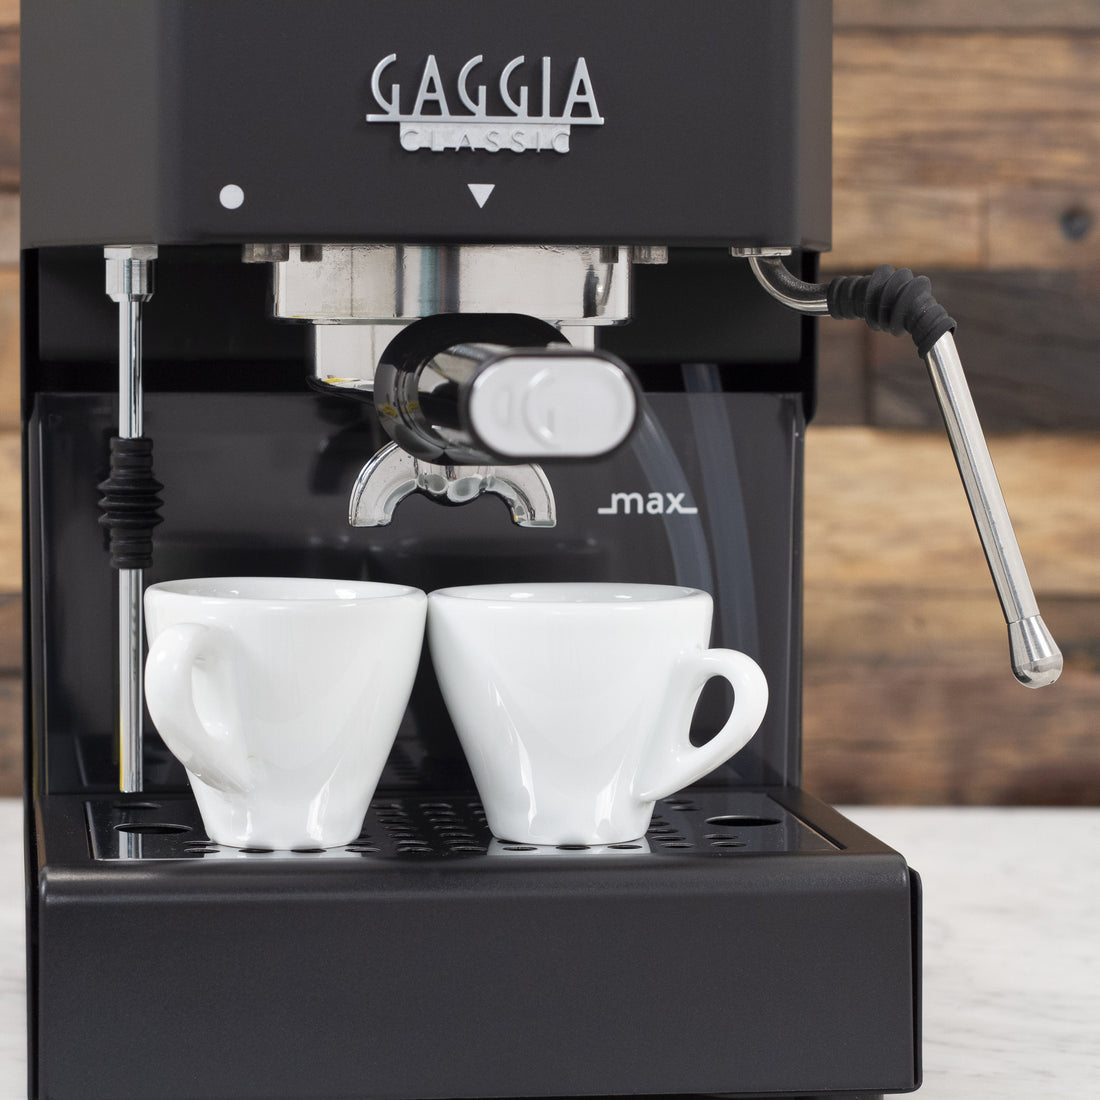 Gaggia Classic Evo Pro Espresso Machine in Thunder Black with Walnut